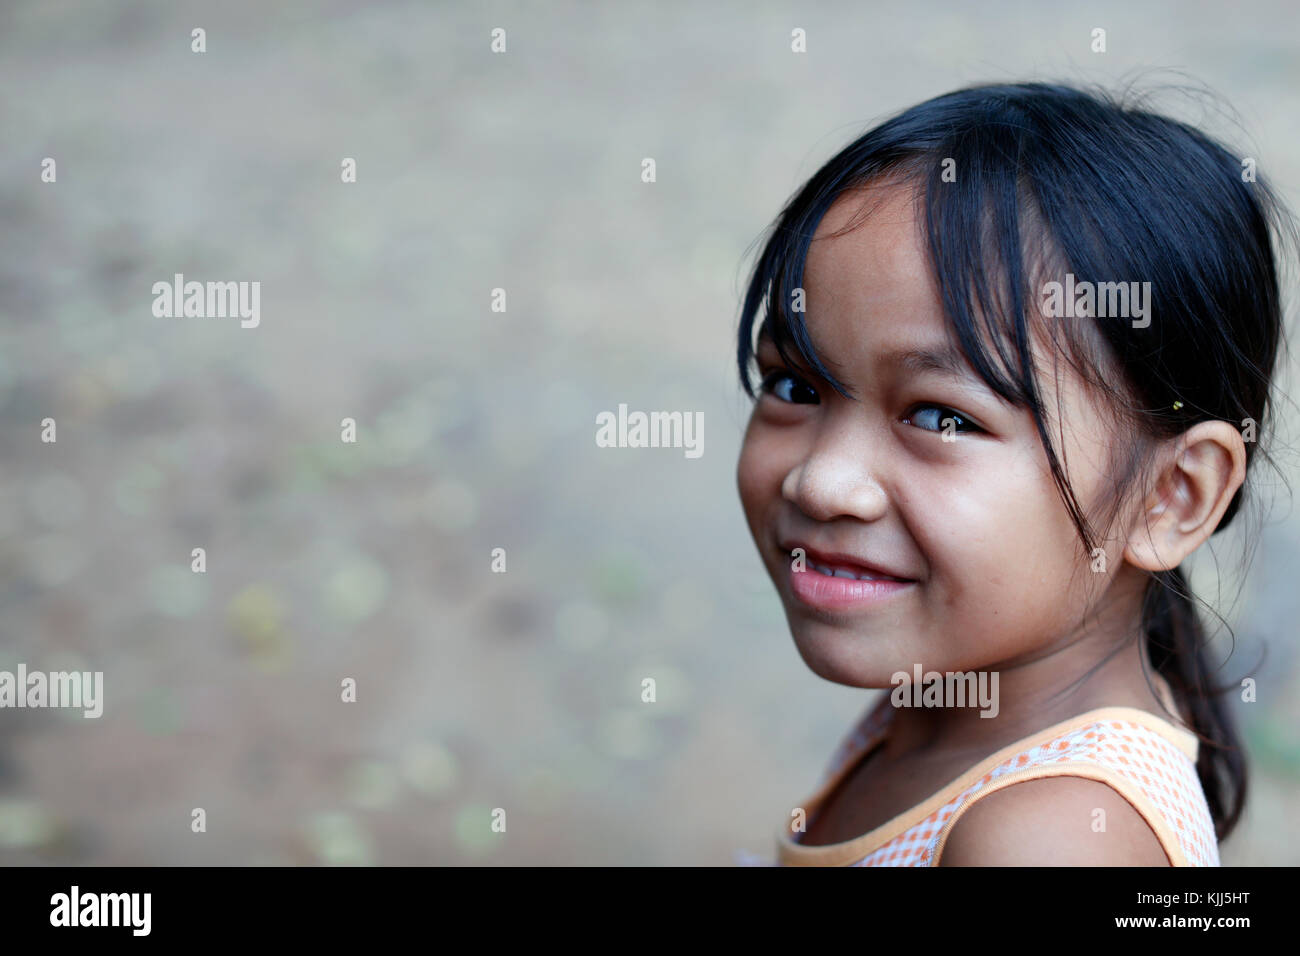 Bahnar (Ba Na) ethnische Gruppe. Junges Mädchen. Porträt. Kon Tum. Vietnam. Stockfoto